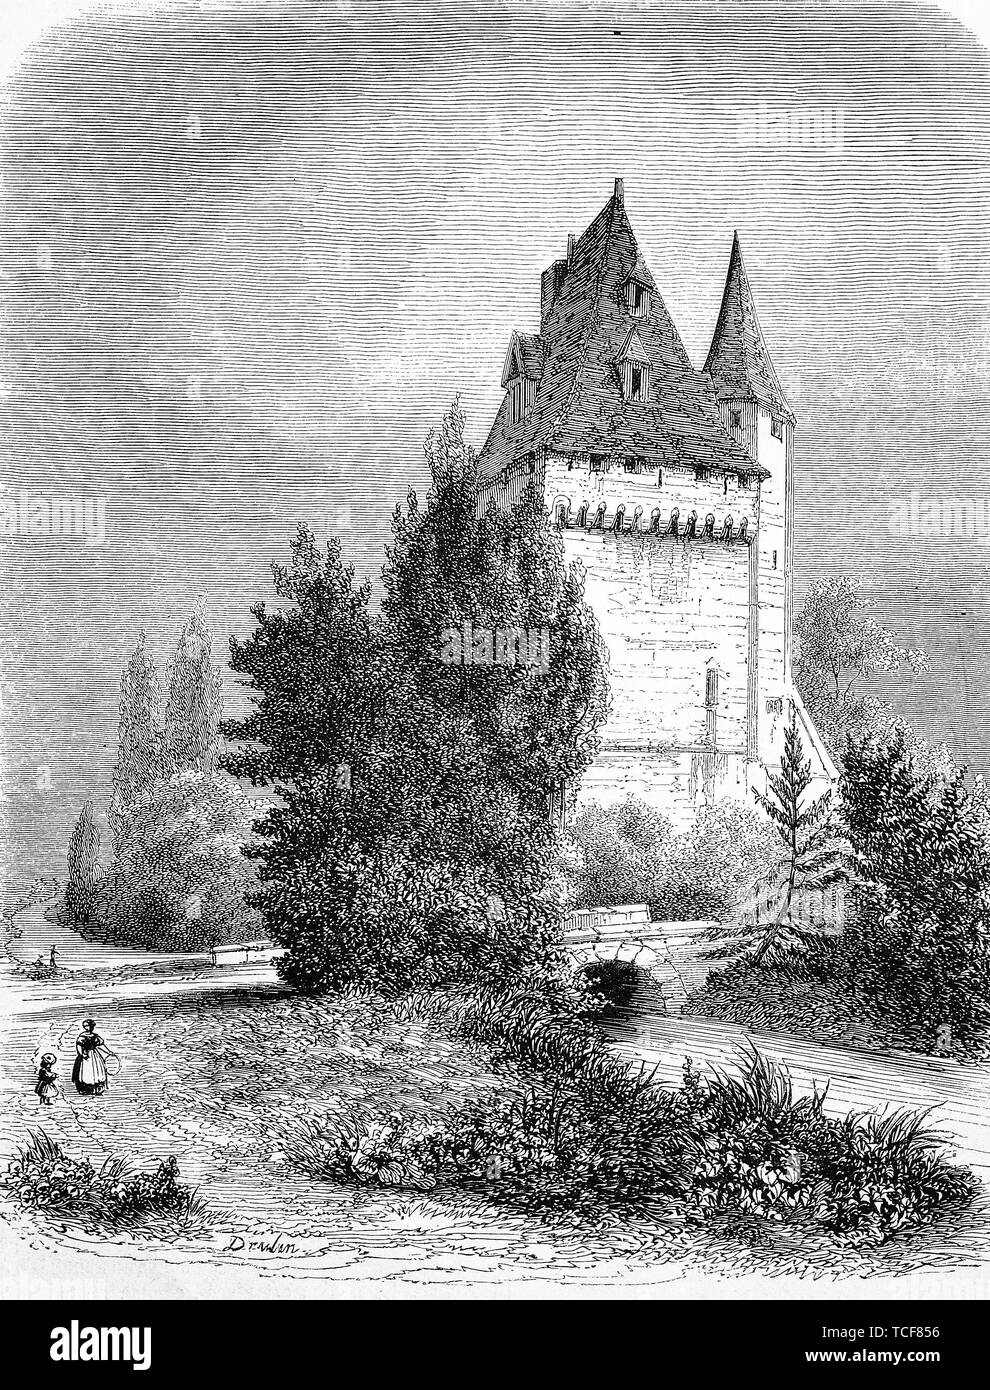 Garder, skype, un type de tour fortifiée, donjon, 1860, gravure sur bois, historique, France, Europe Banque D'Images